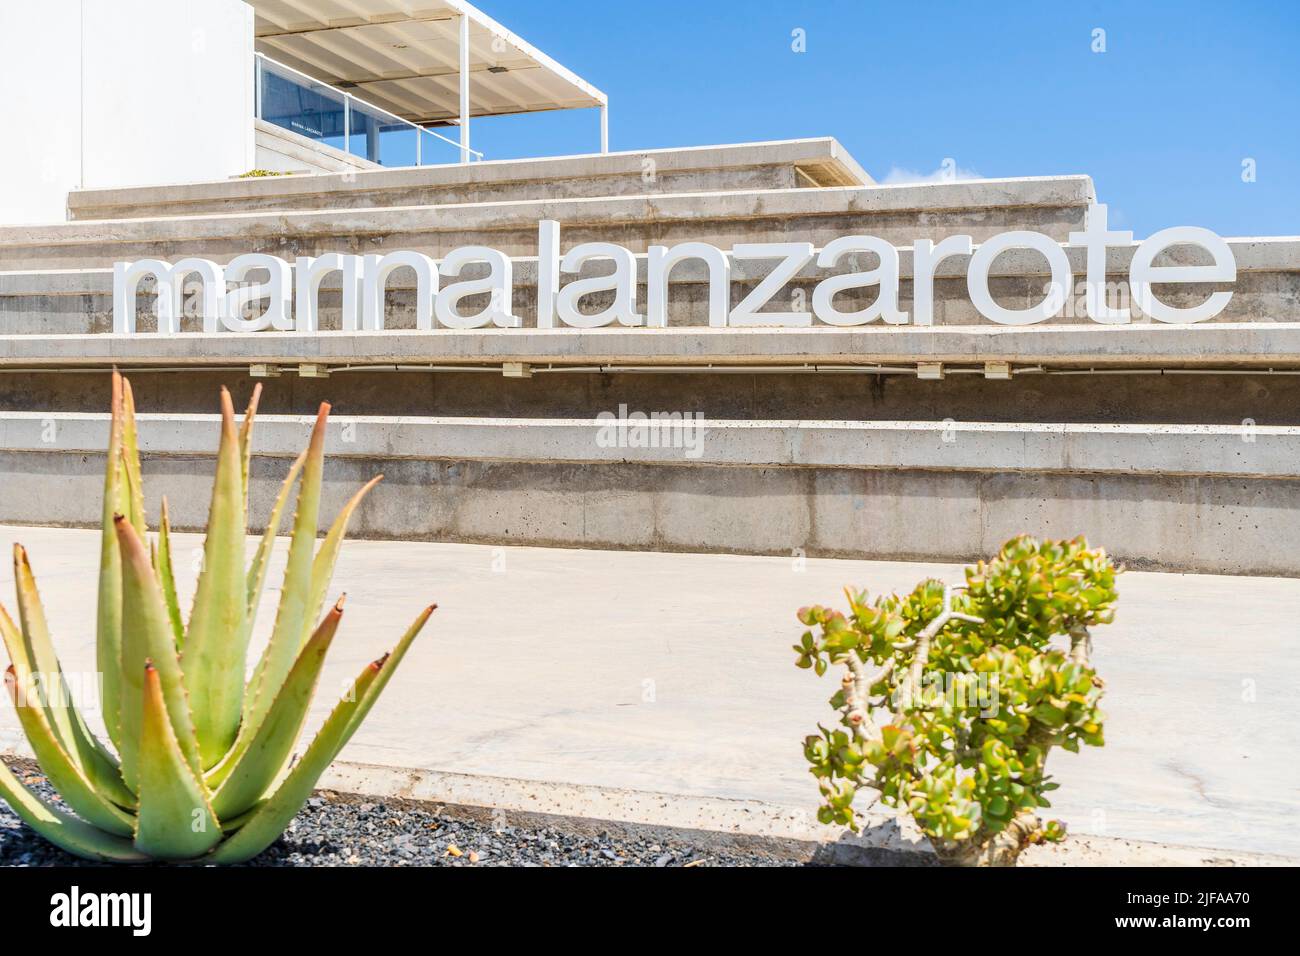 Architecture moderne et panneau indiquant Marina Lanzarote à Arrecife, capitale de Lanzarote, îles Canaries, Espagne Banque D'Images